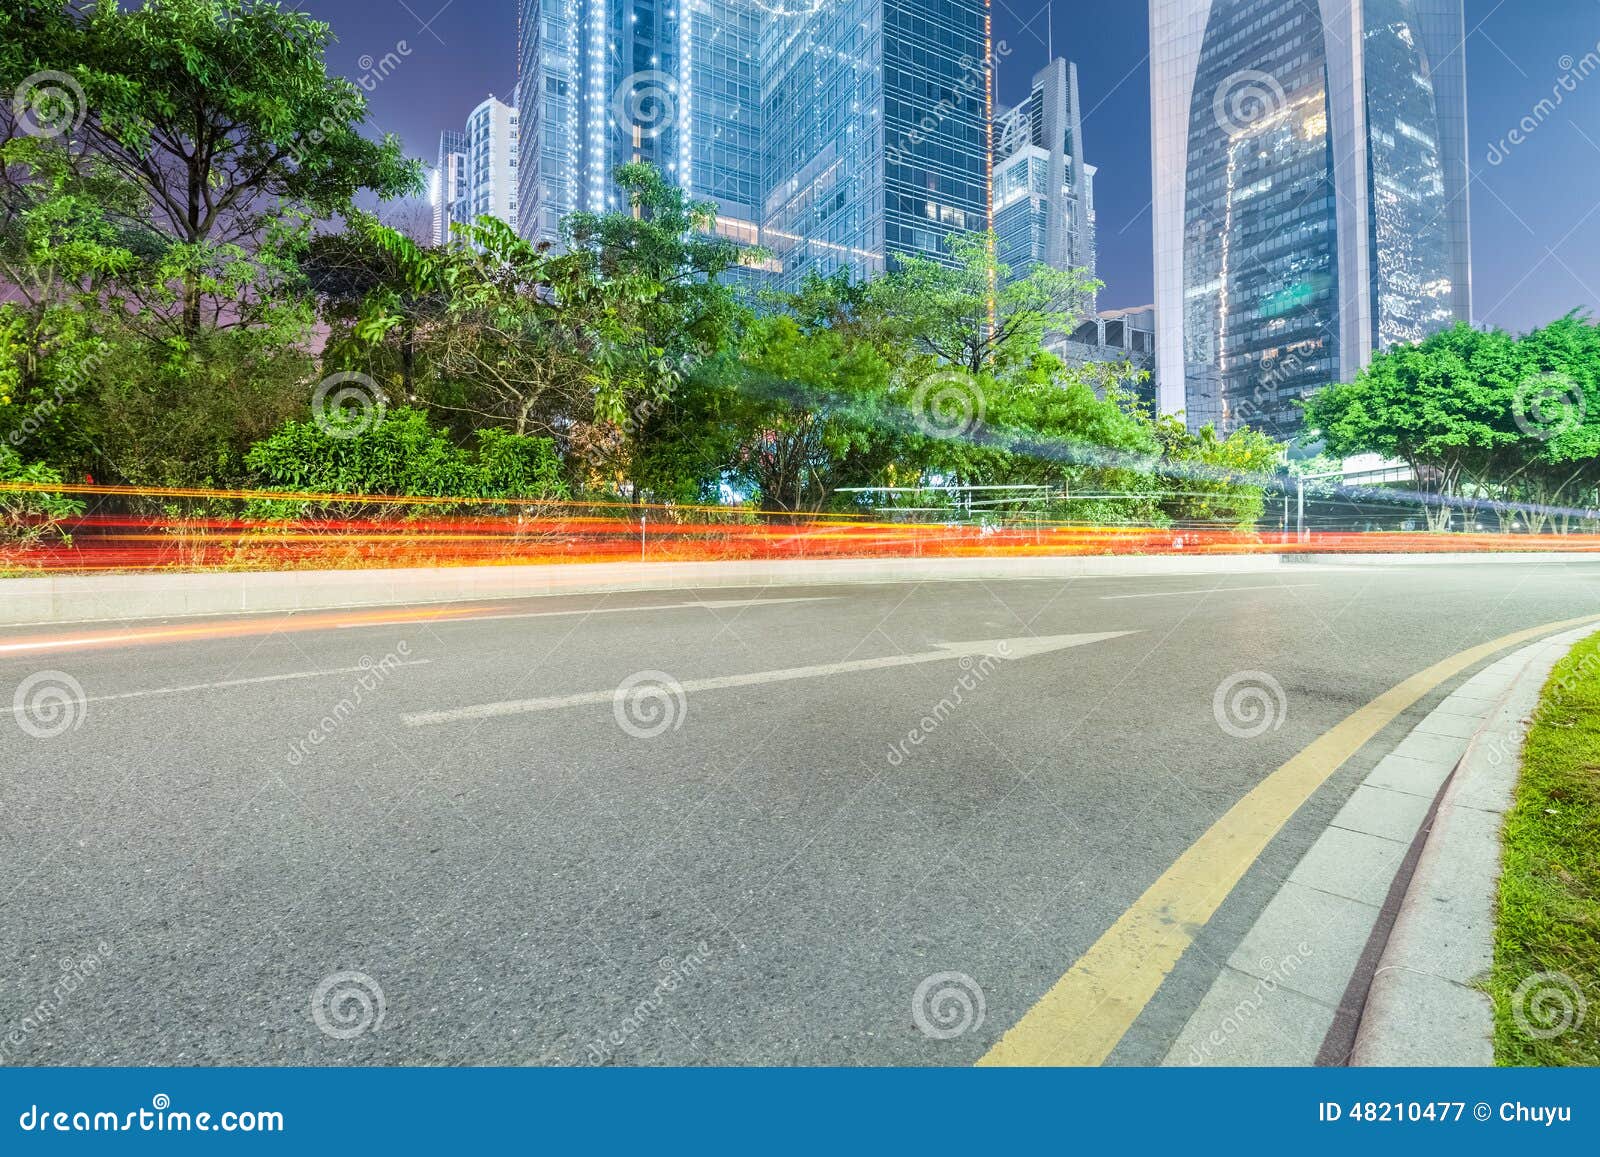 City street buildings traffic road asphalt HD phone wallpaper  Peakpx